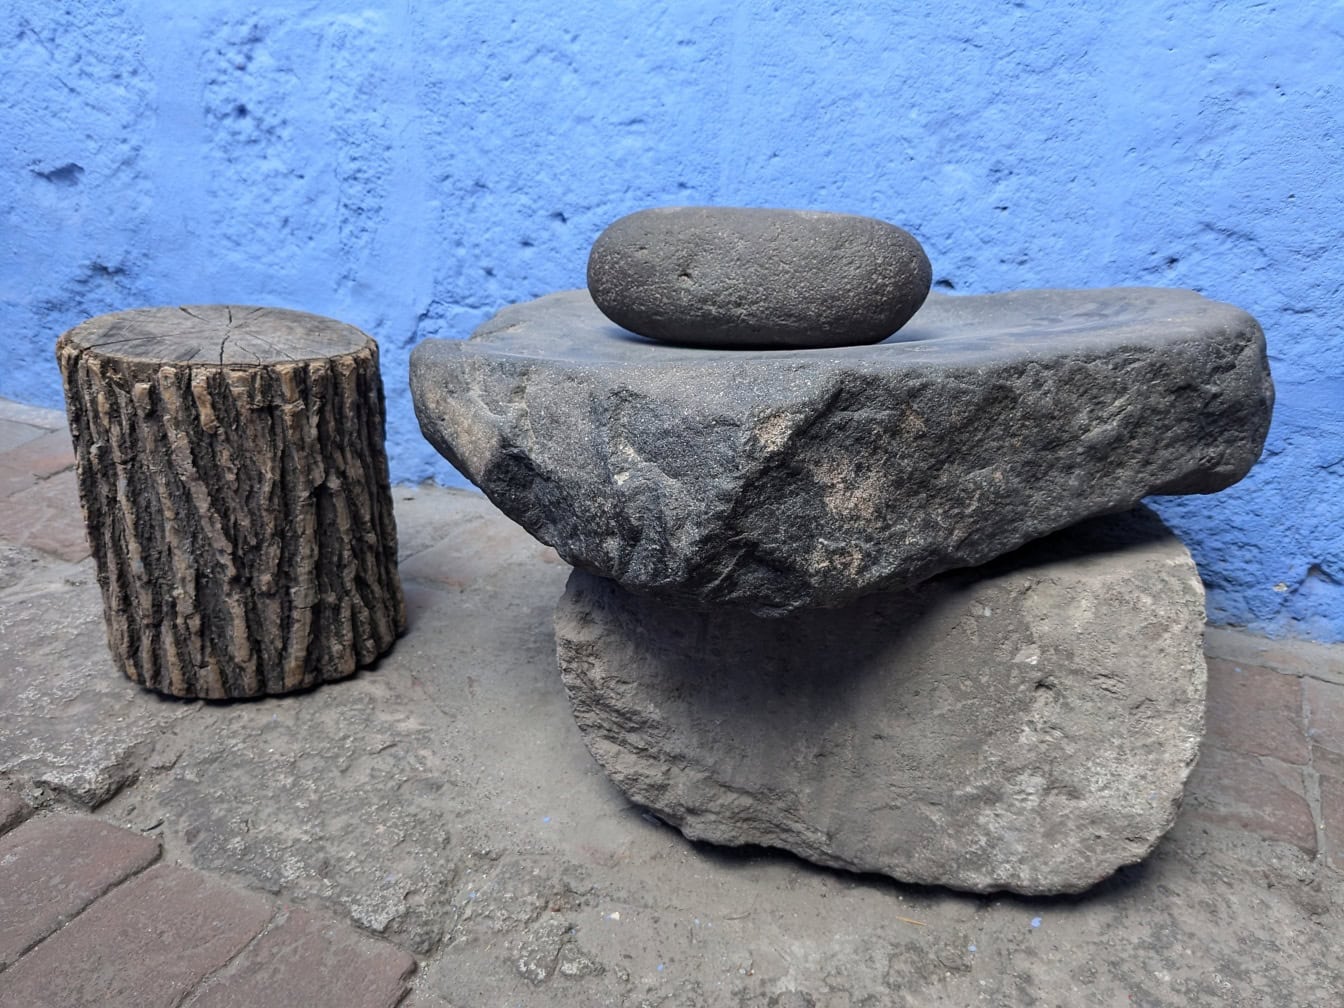 Камені використовувалися як кухонне начиння, як млин для подрібнення їжі, в монастирі Санта-Каталіна в Перу